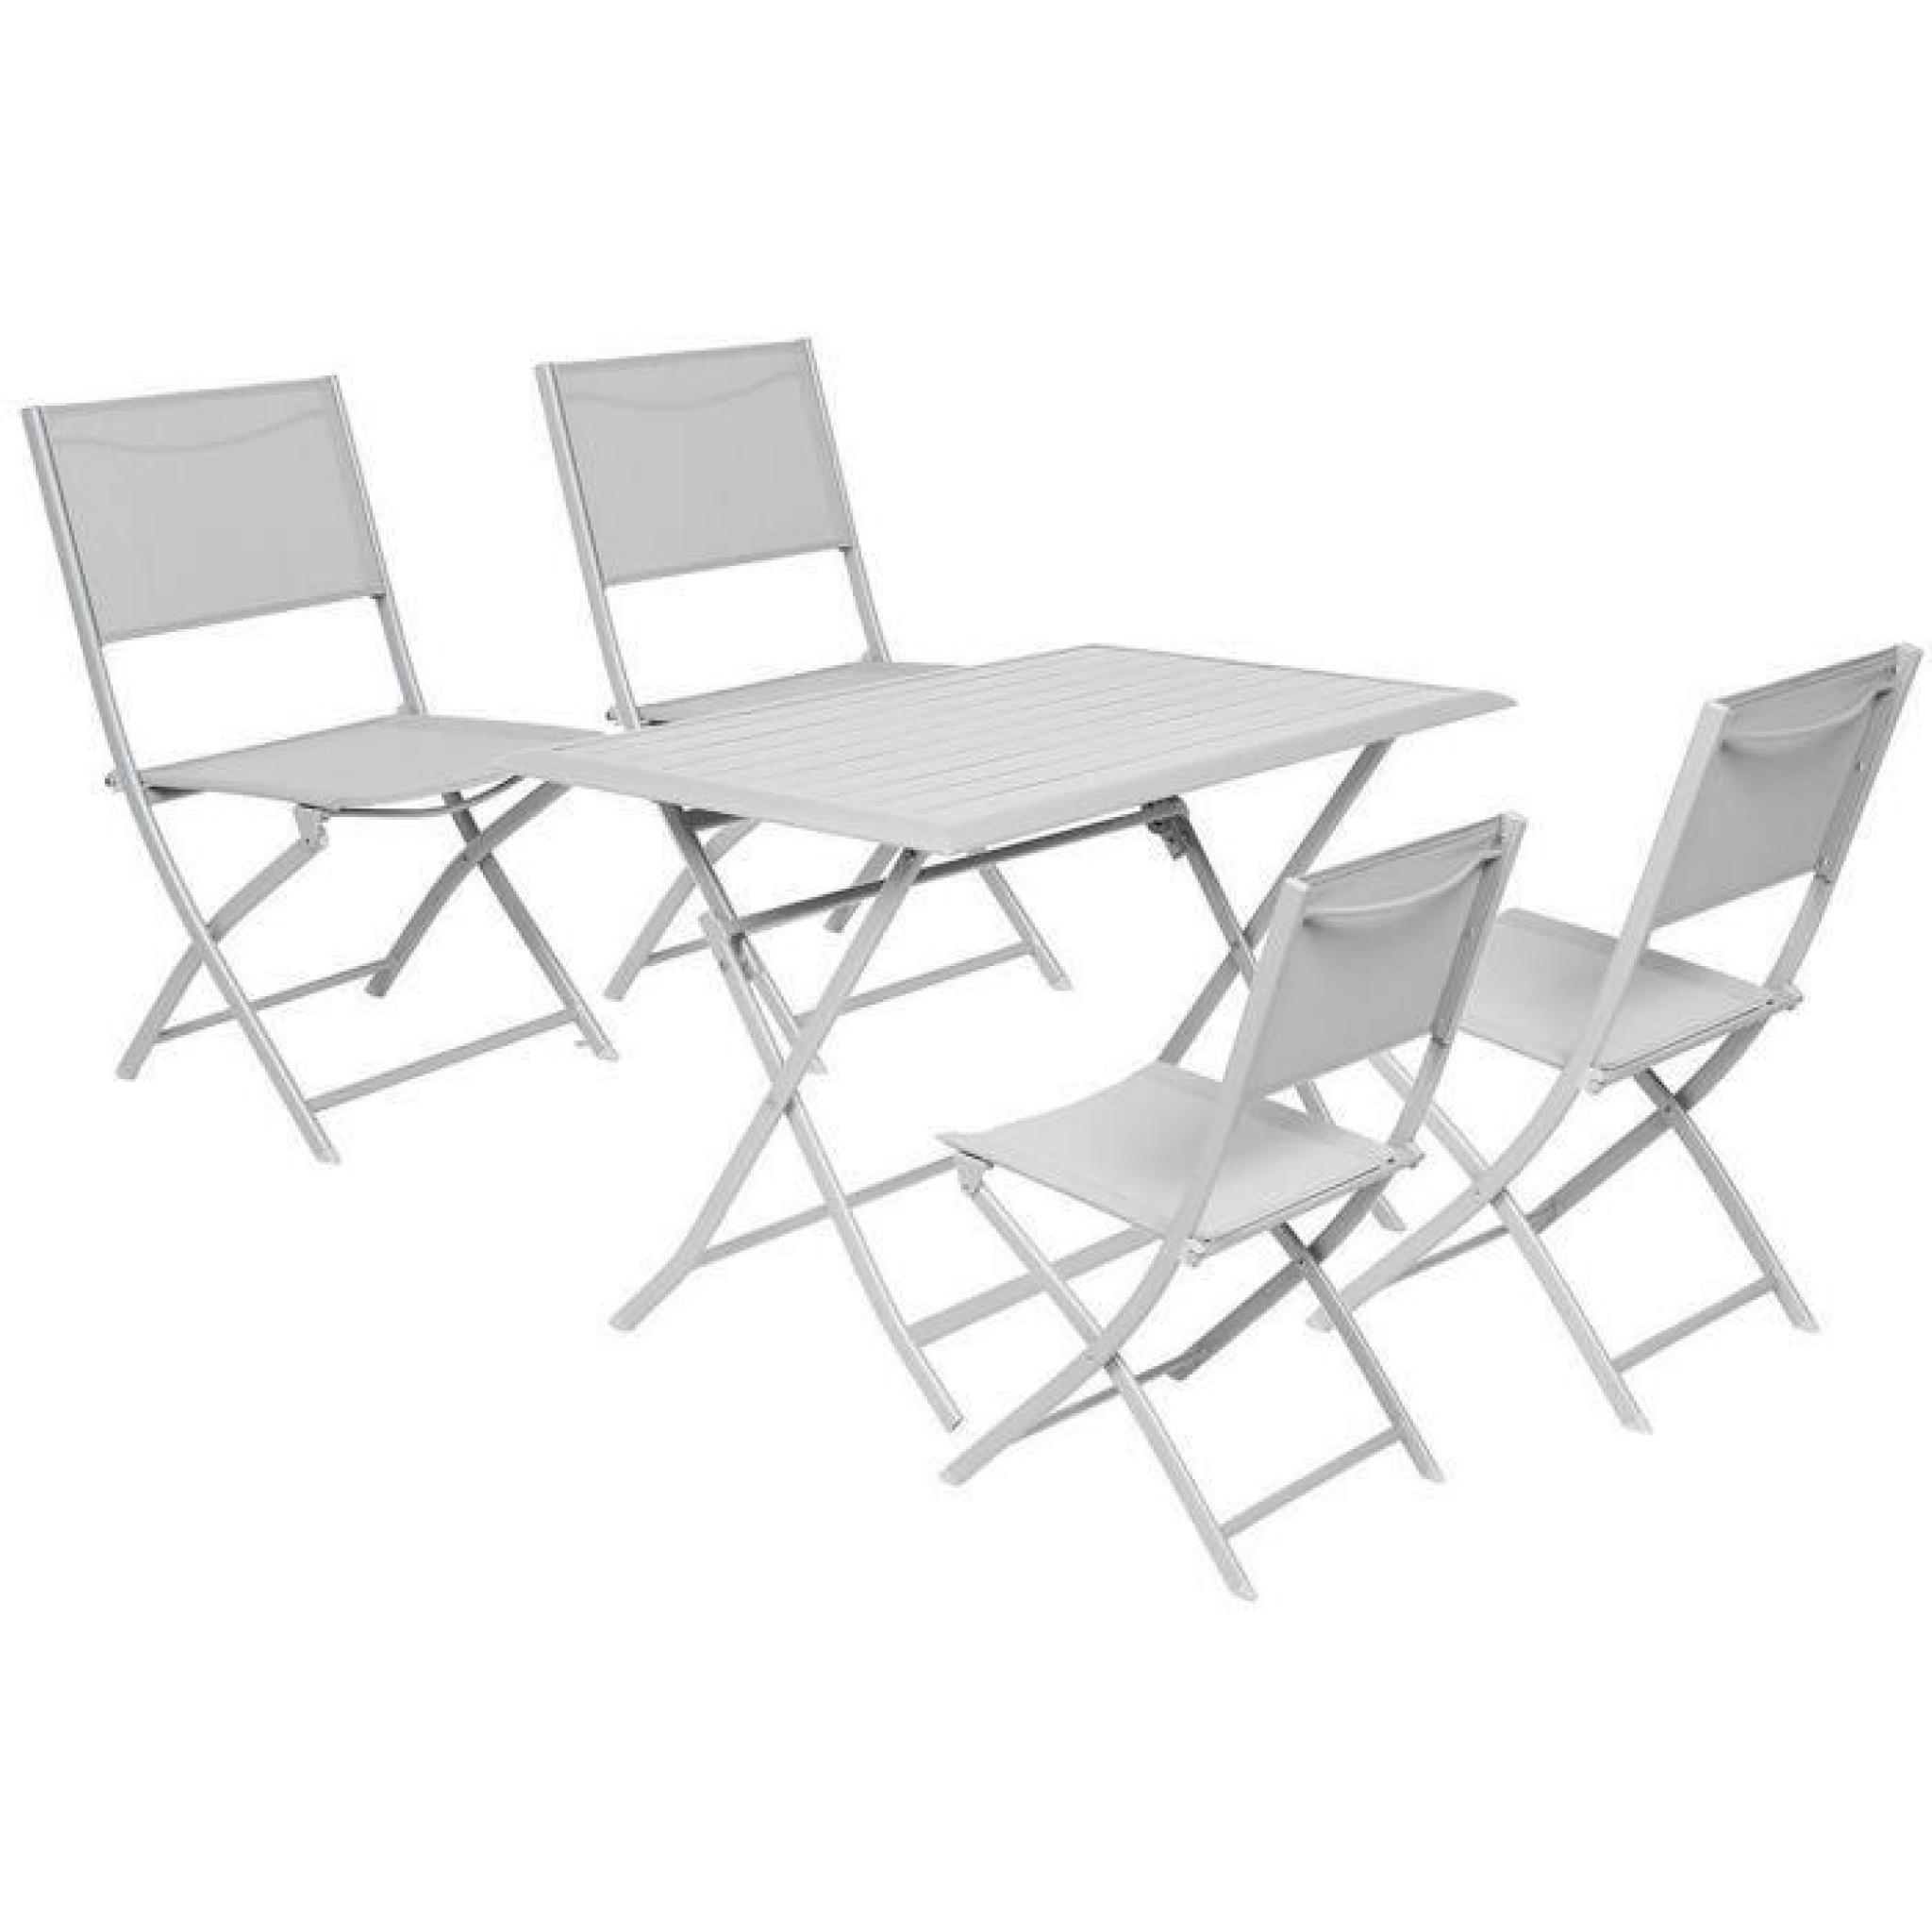 Table pliante rectangulaire en Aluminium coloris silver mat - Dim : L 110 x P 71 x H 71 cm  pas cher